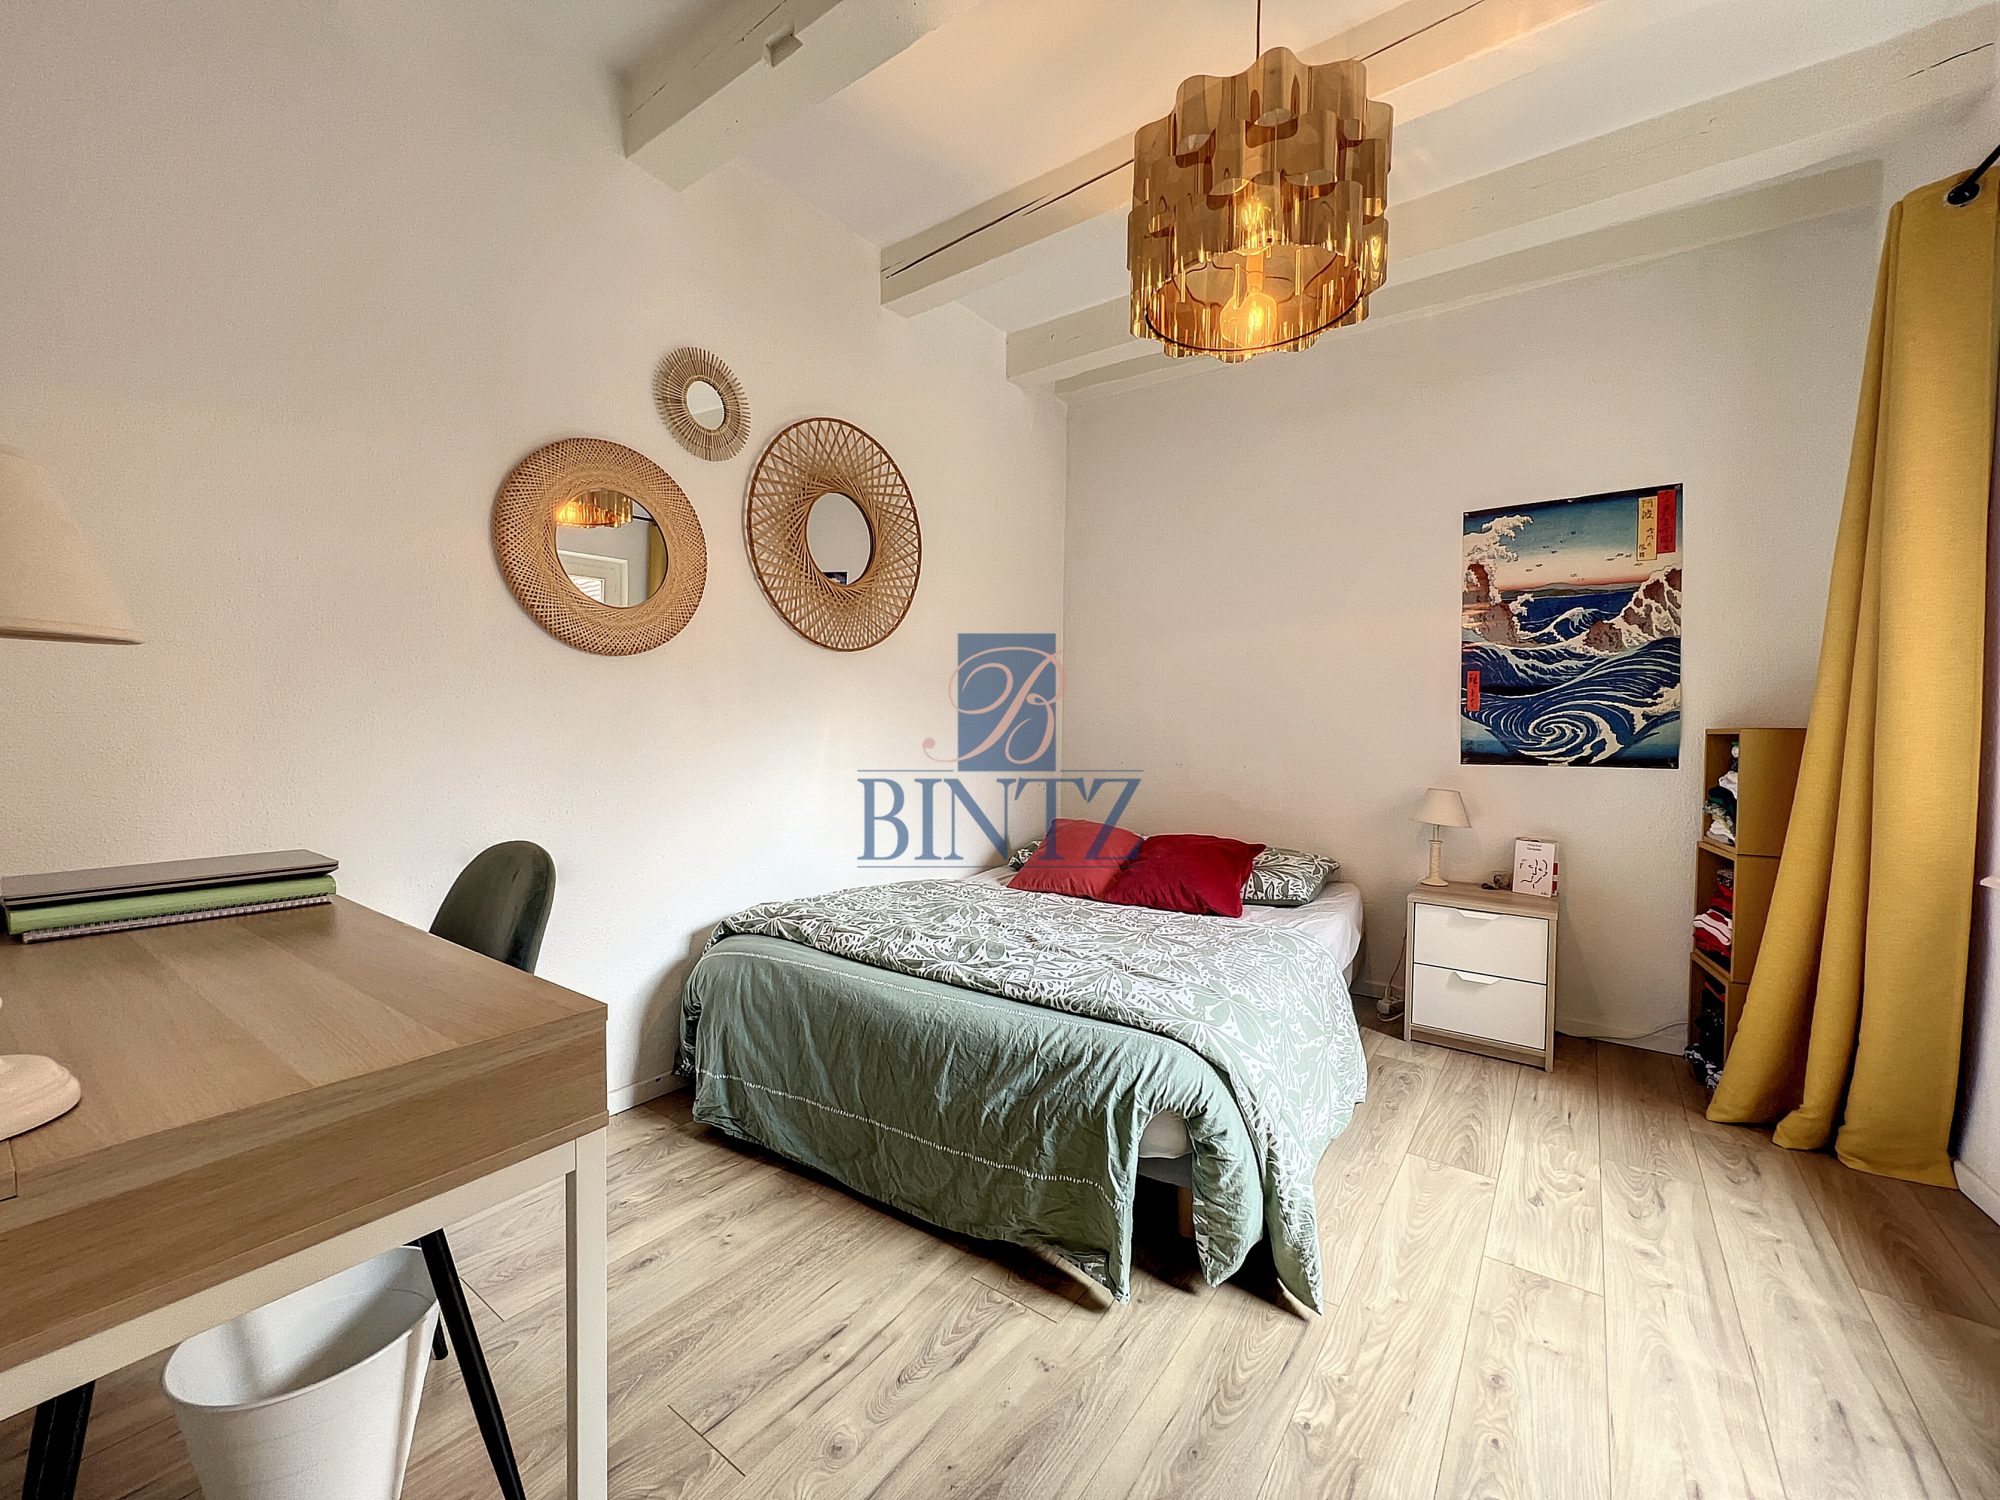 3P meuble rue de zurich - location appartement Strasbourg - Bintz Immobilier - 9